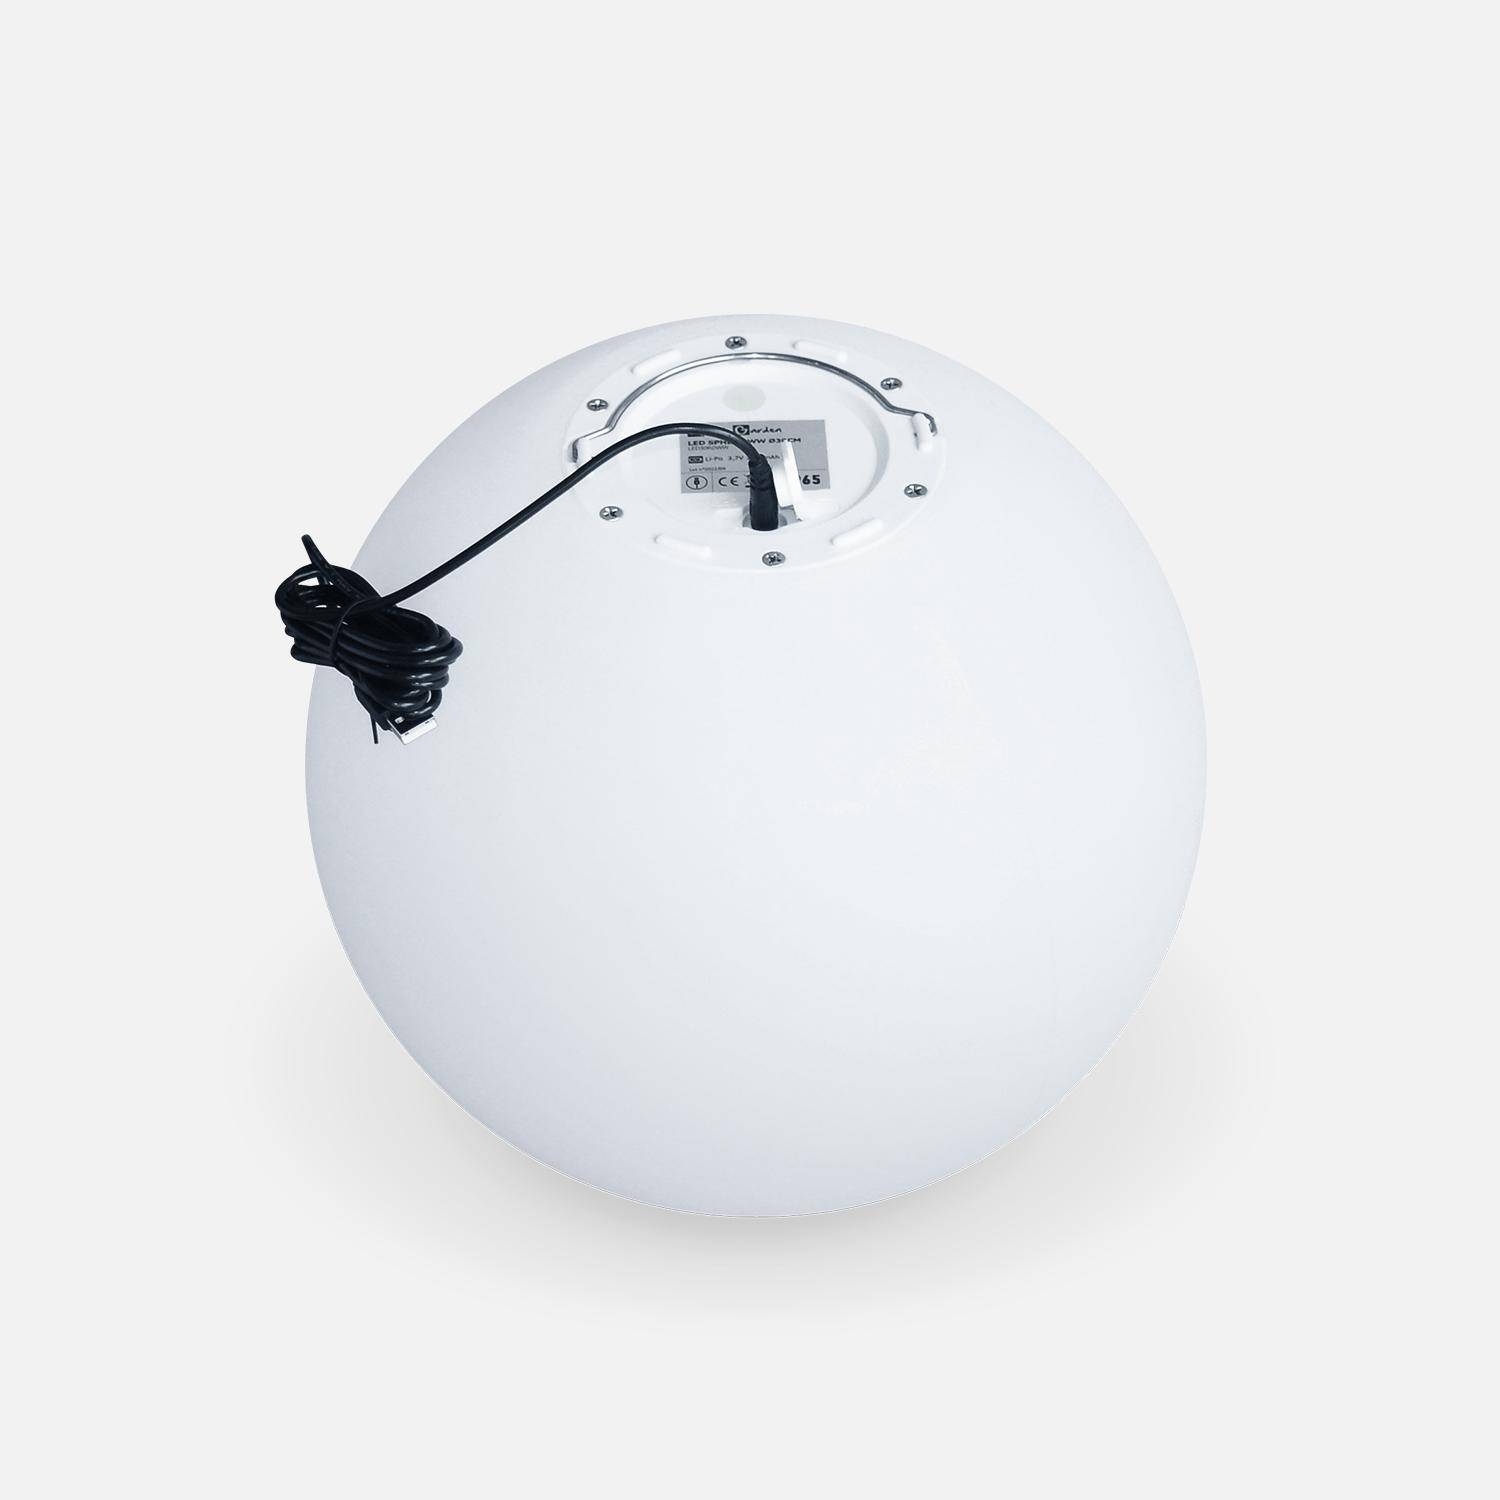 LED Bollamp 50cm – Decoratieve lichtbol, Ø50cm, warm wit, afstandsbediening Photo4